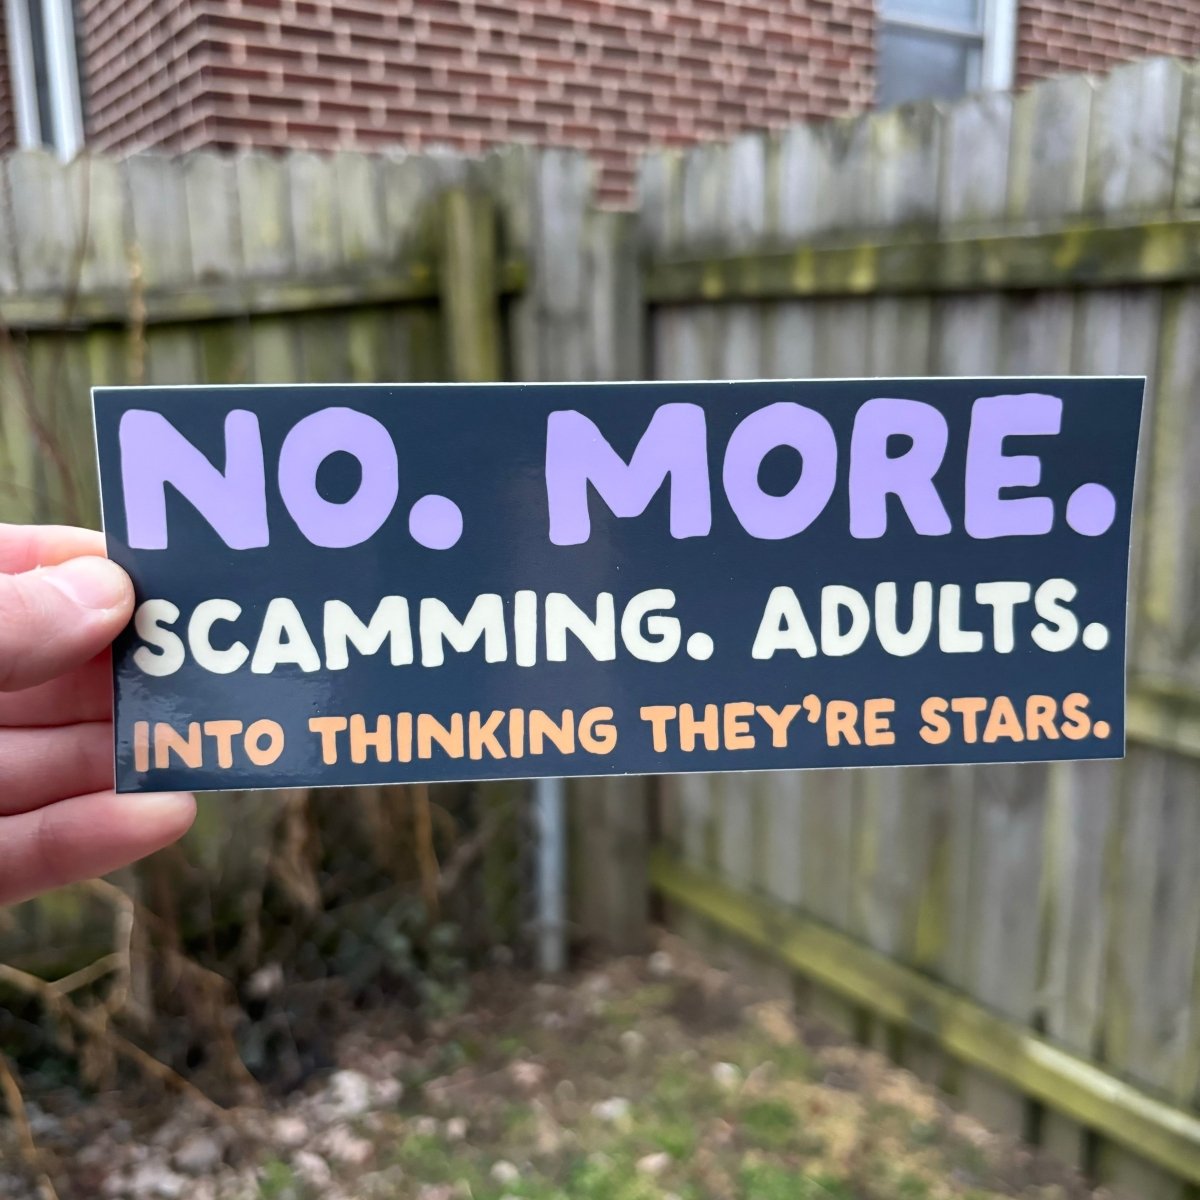 No. More. Scamming. Adults. Bumper Sticker - Sticker - Pretty Bad Co.